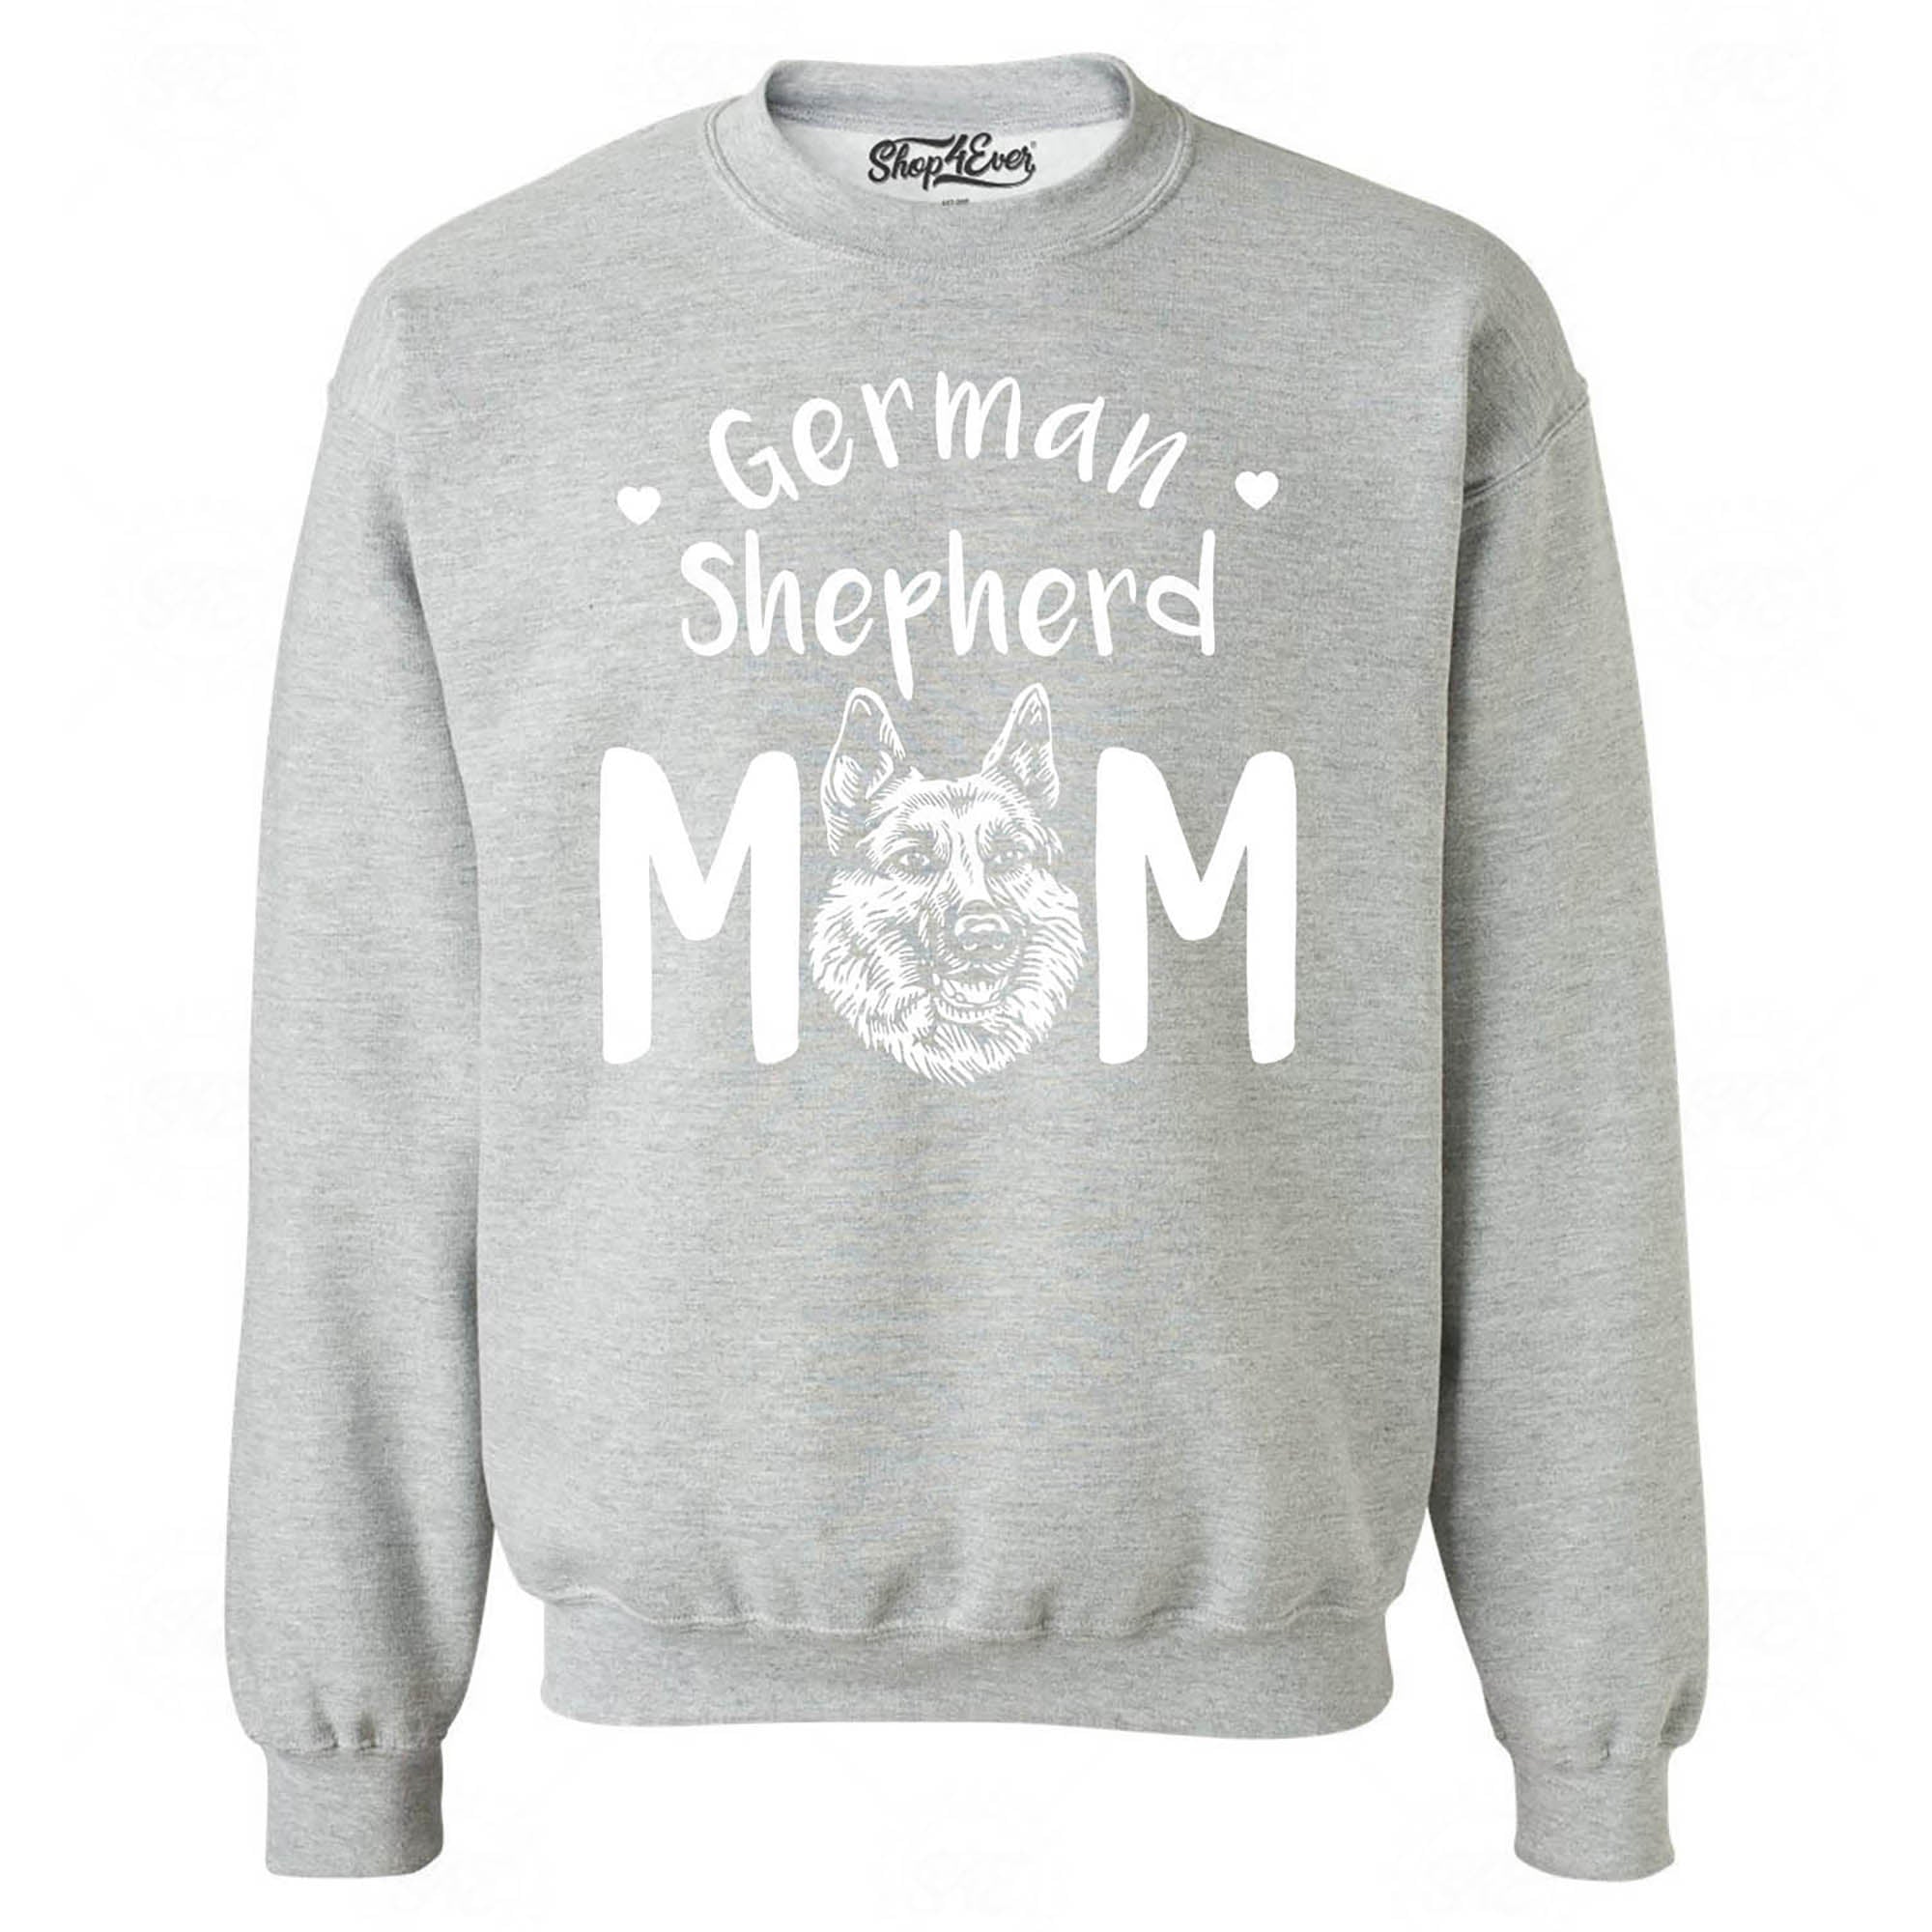 German Shepherd Mom Crewneck Sweatshirts